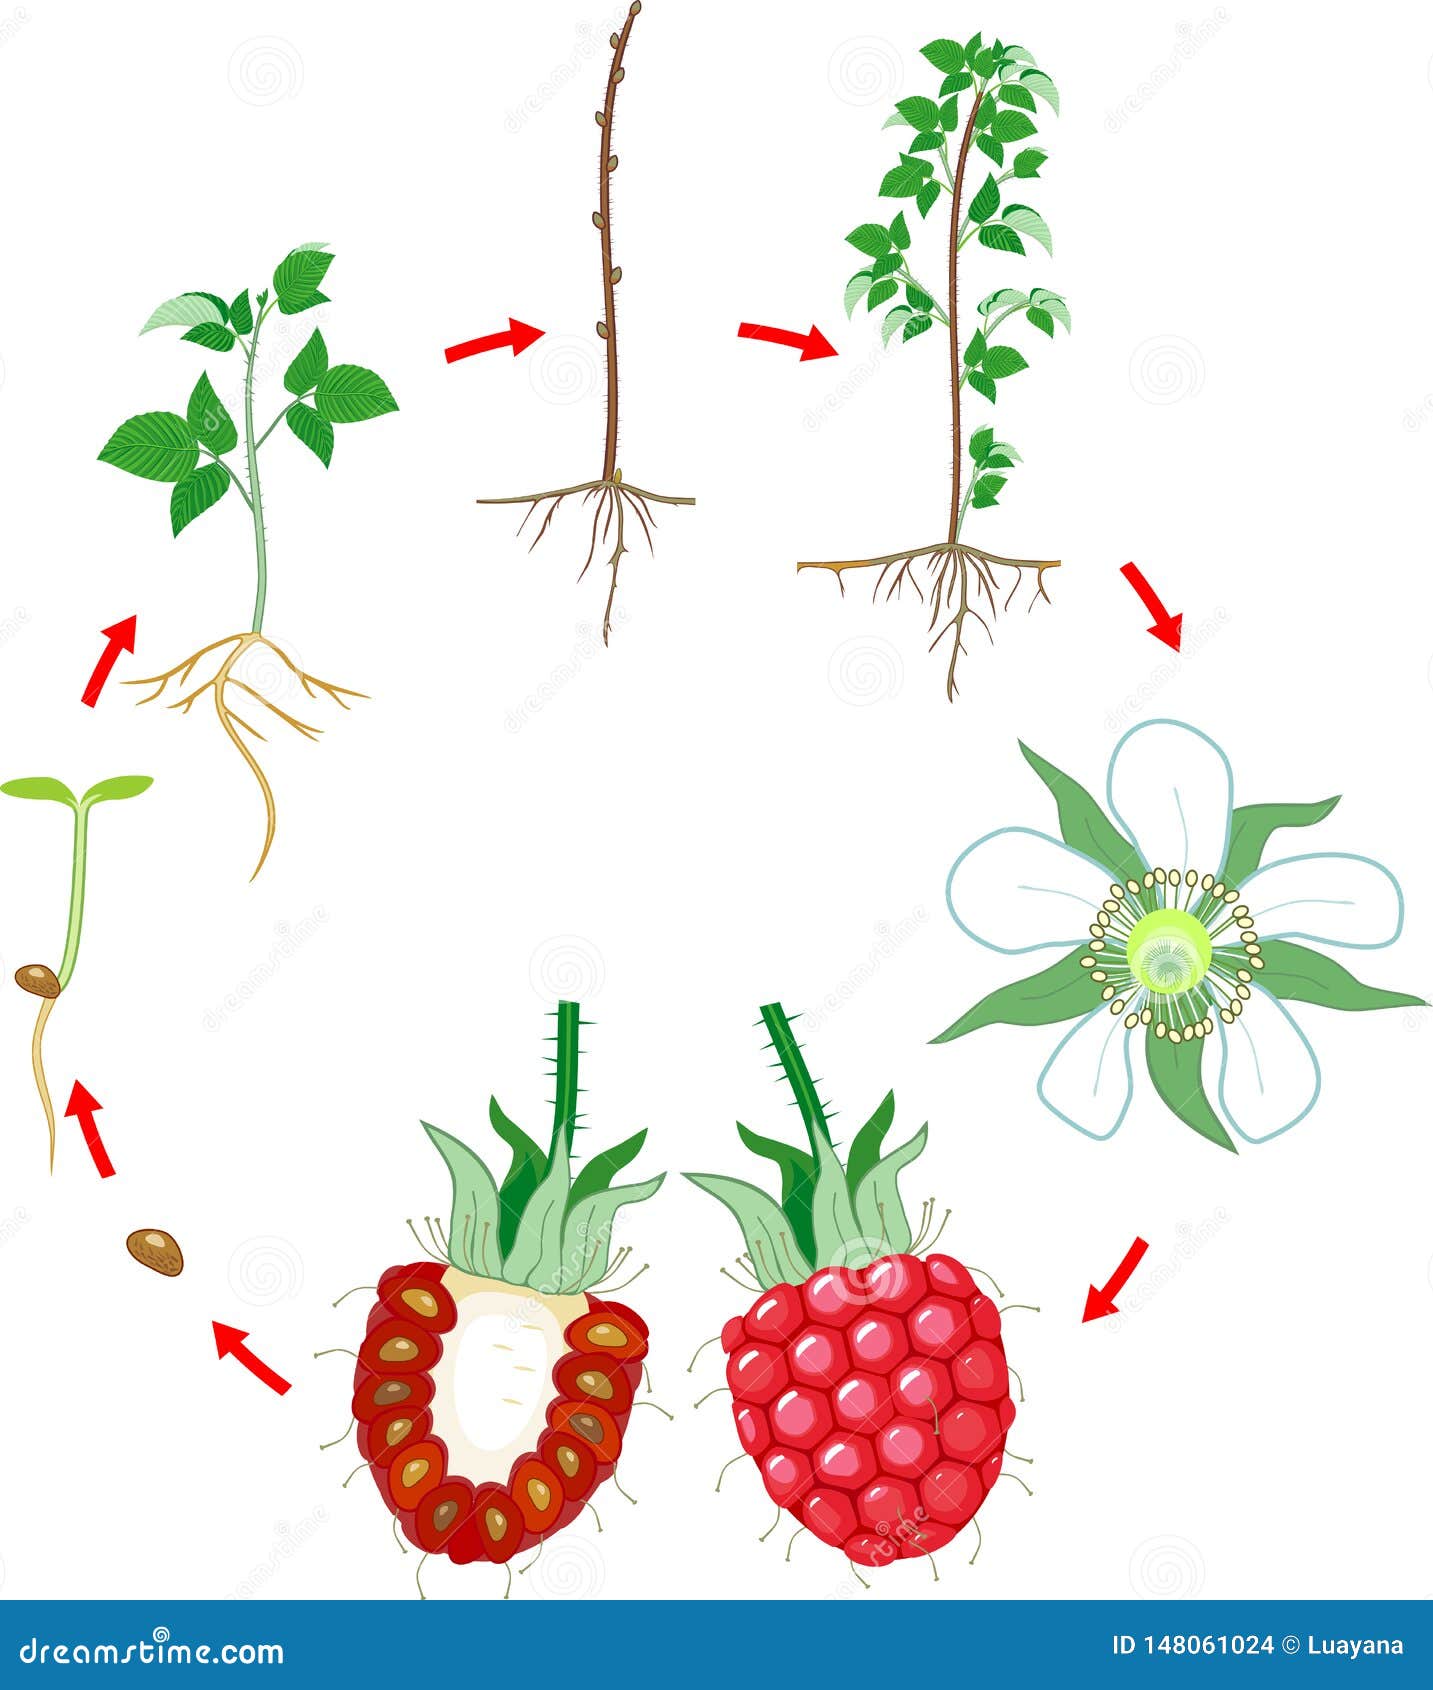 При делении жизненного цикла овощных растений. Этапы роста малины. Цикл роста малины. Этапы развития малины. Жизненный цикл малины обыкновенной.